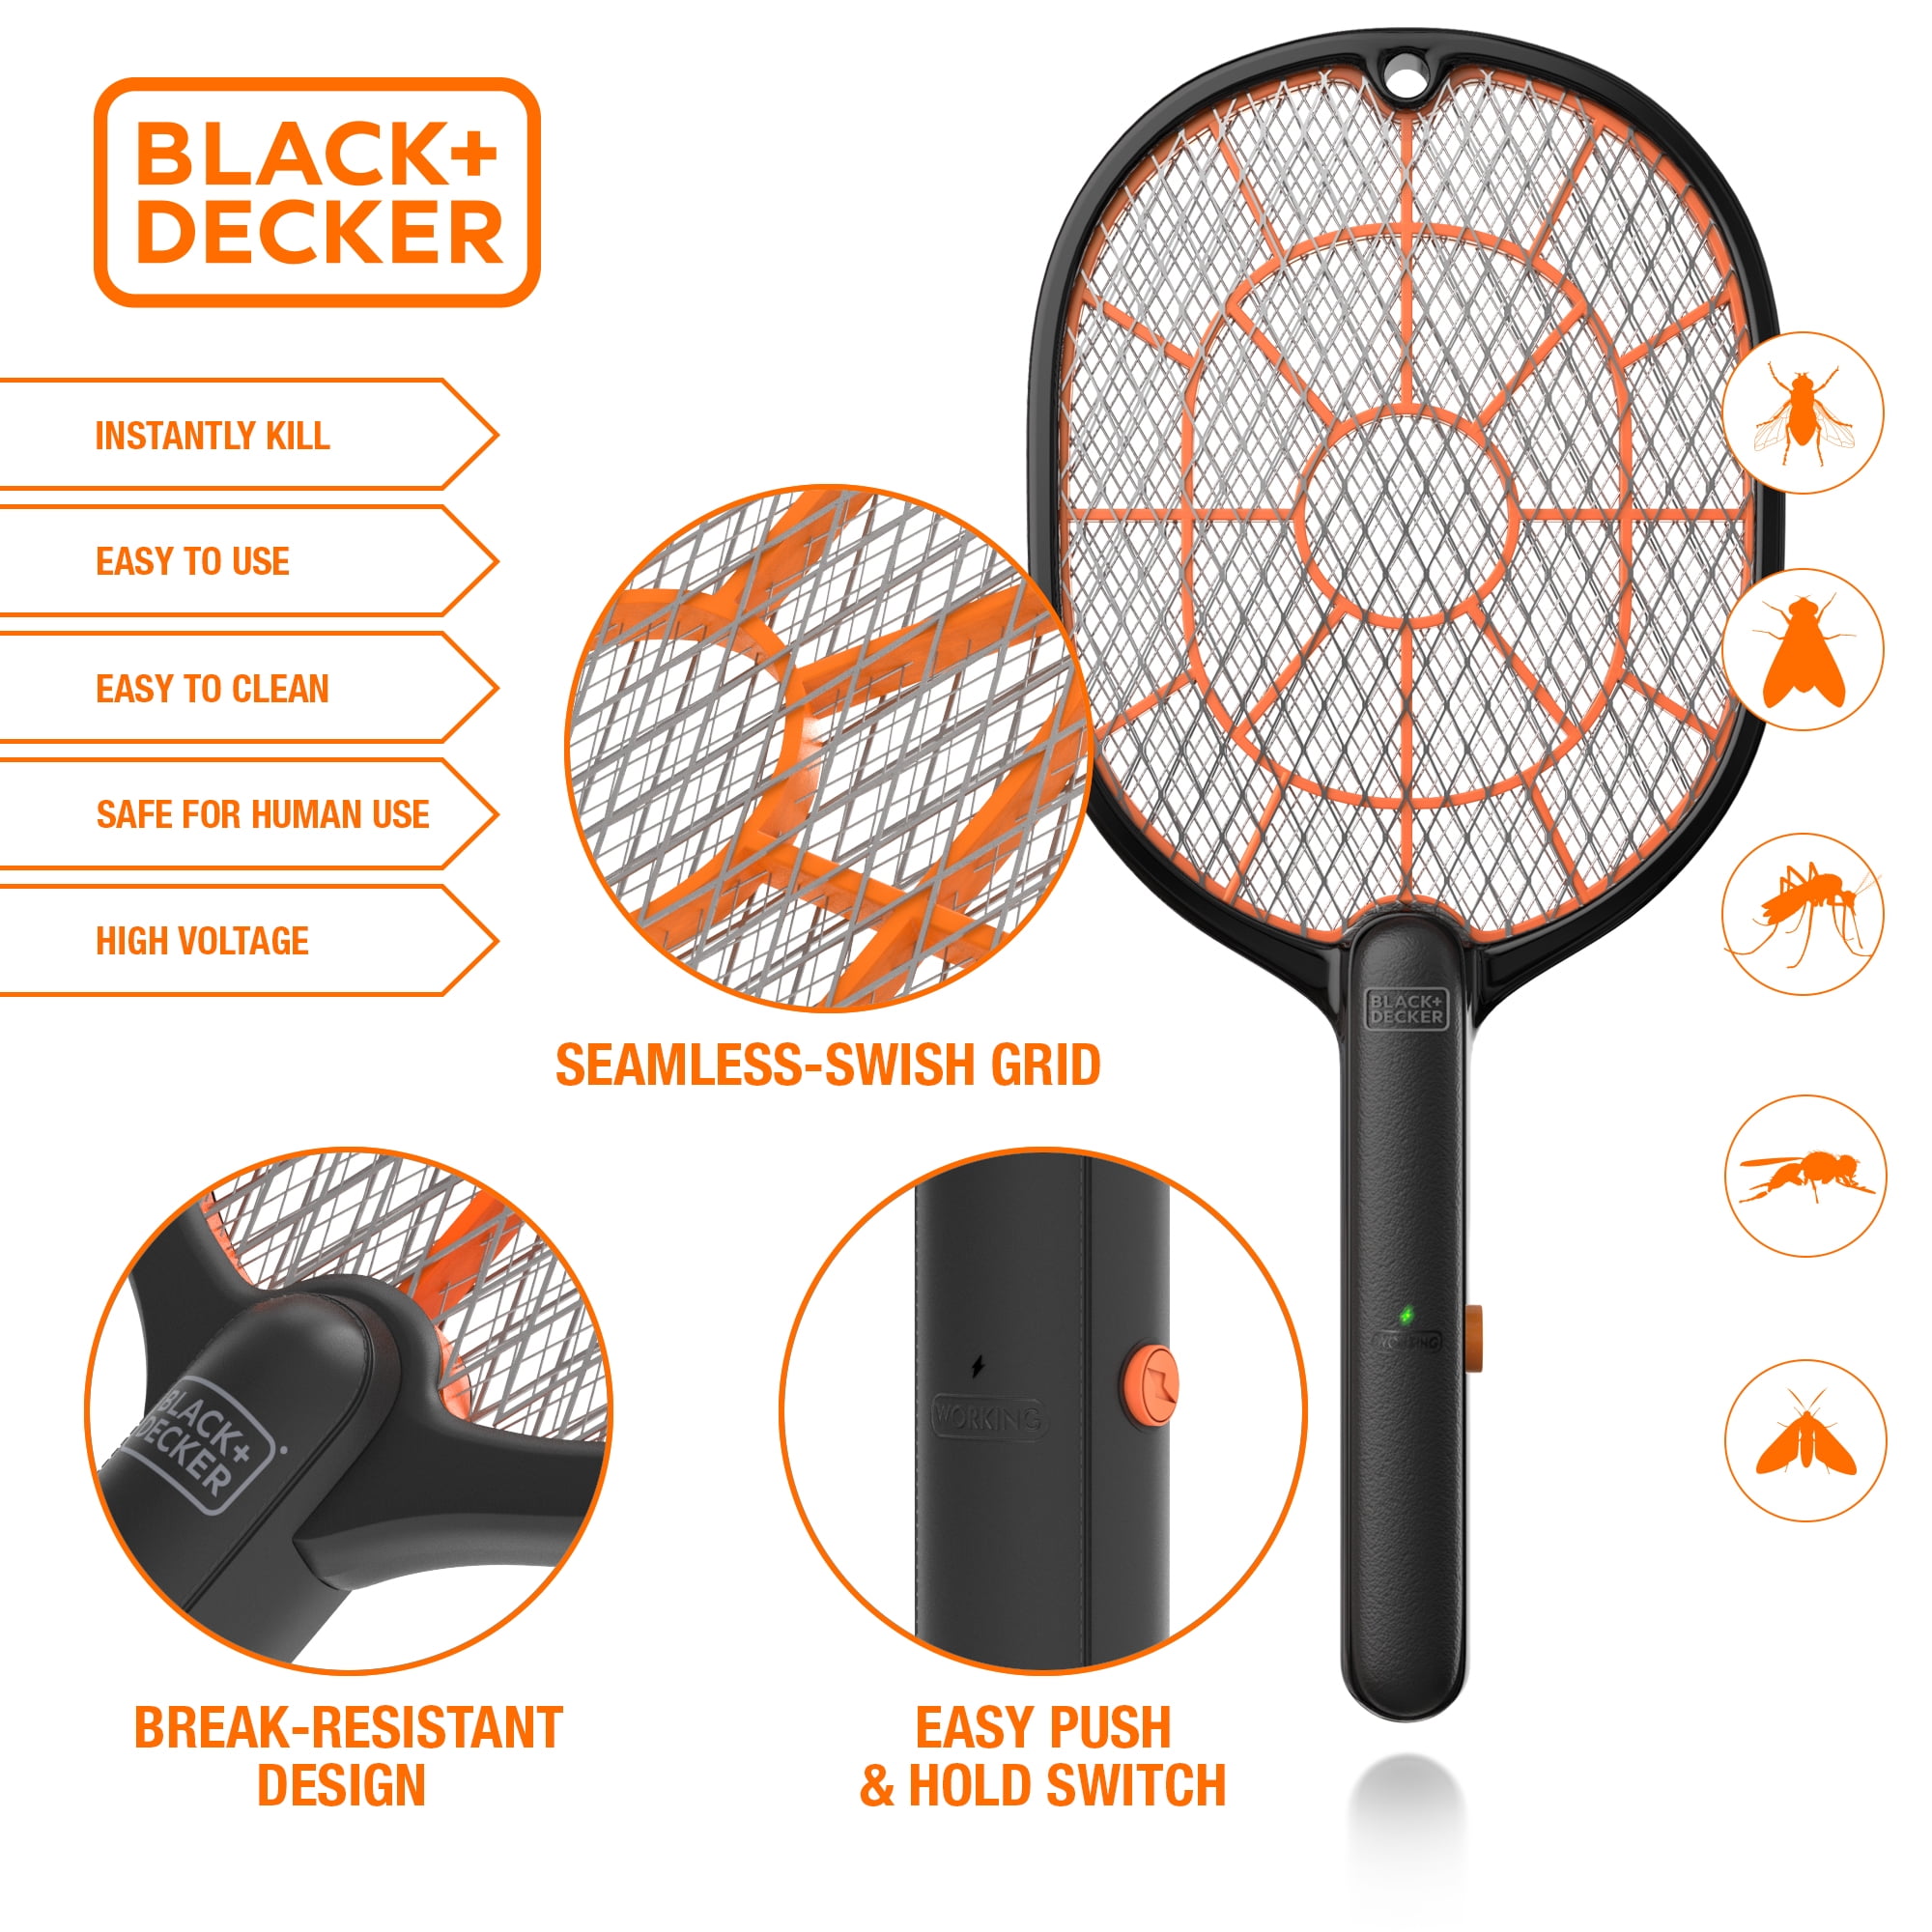 BLACK+DECKER Outdoor Electric UV Zapper - 24-Watt, Kills Mosquitos, Flies,  Gnats, Non-Toxic, Indoor/Outdoor, 1/2 Acre Coverage